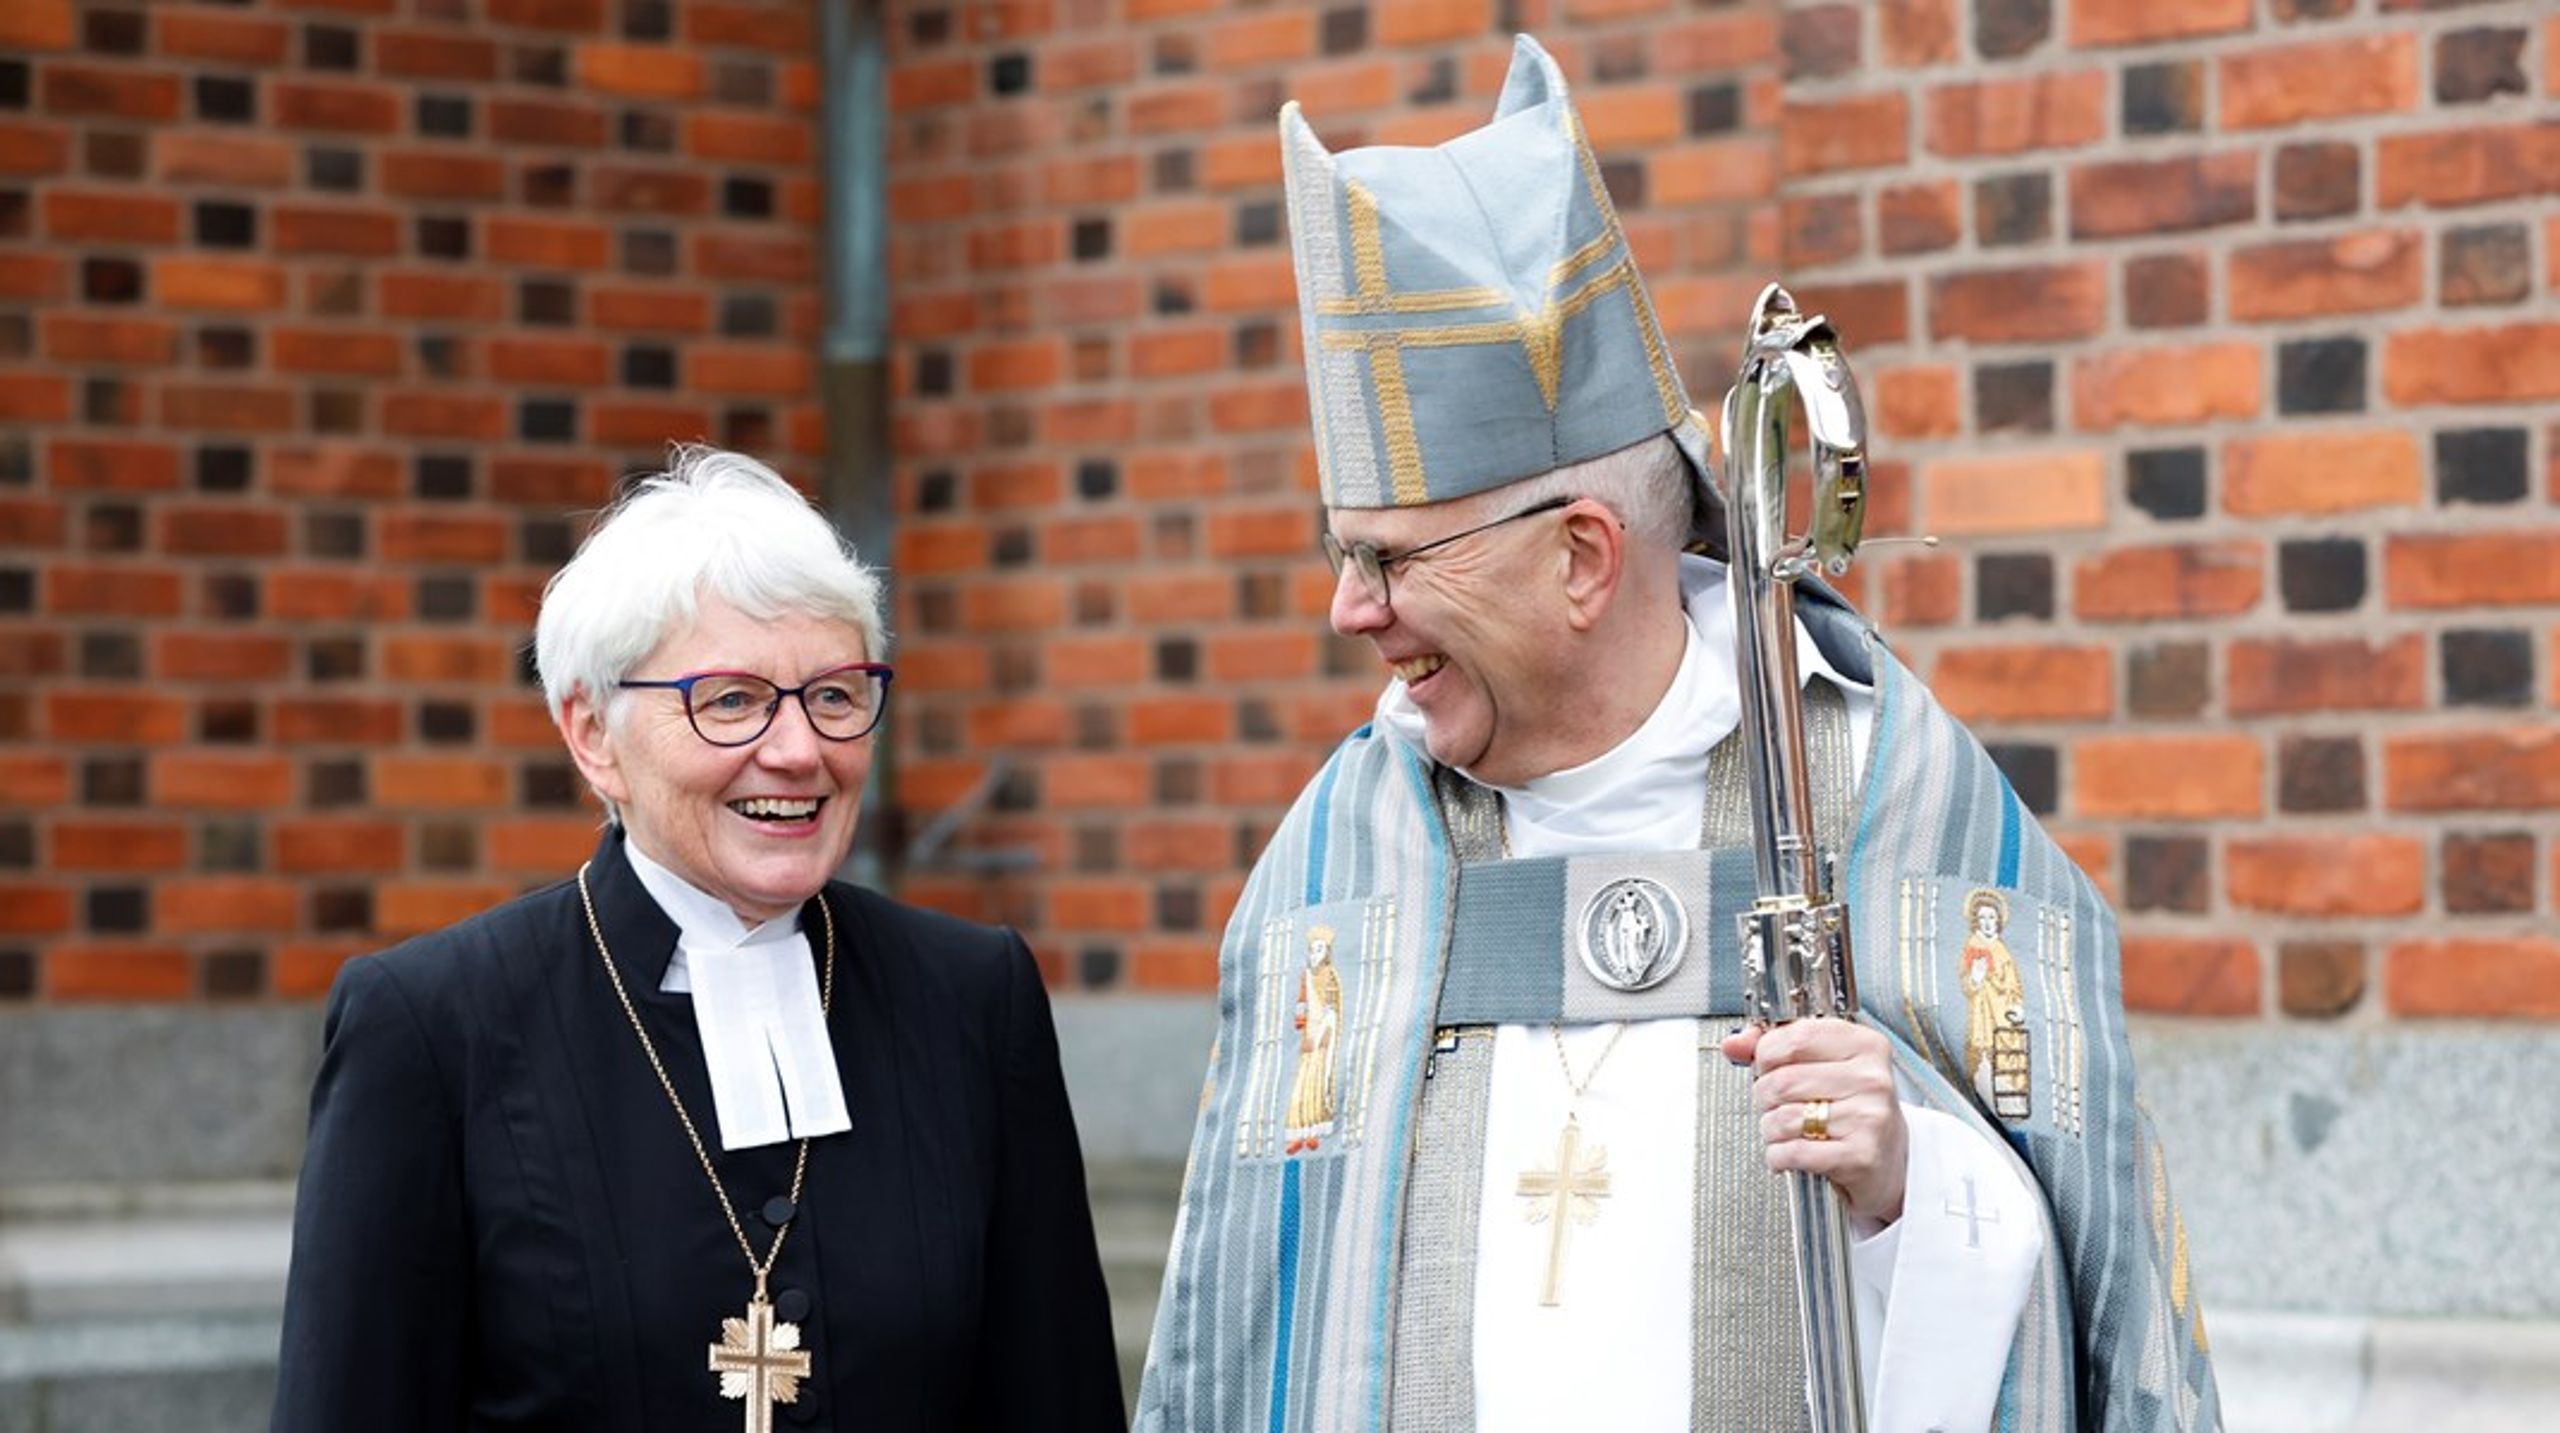 Antje Jackelén lämnade över biskopsstaven till Martin Modéus för snart ett år sedan. Nu blir hon rådgivare på Lunds universitet.